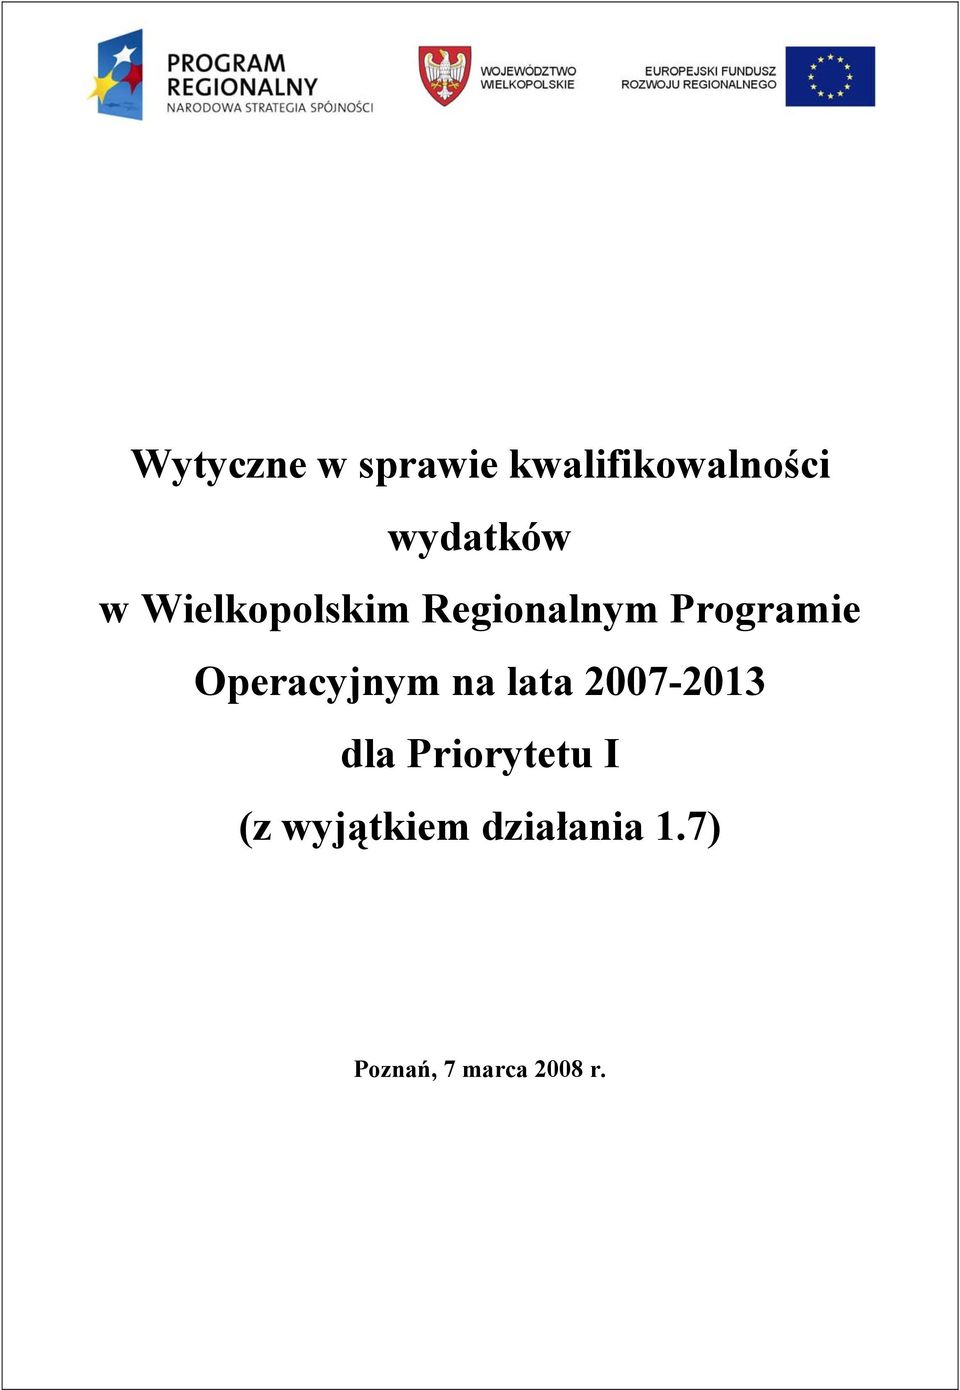 Operacyjnym na lata 2007-2013 dla Priorytetu